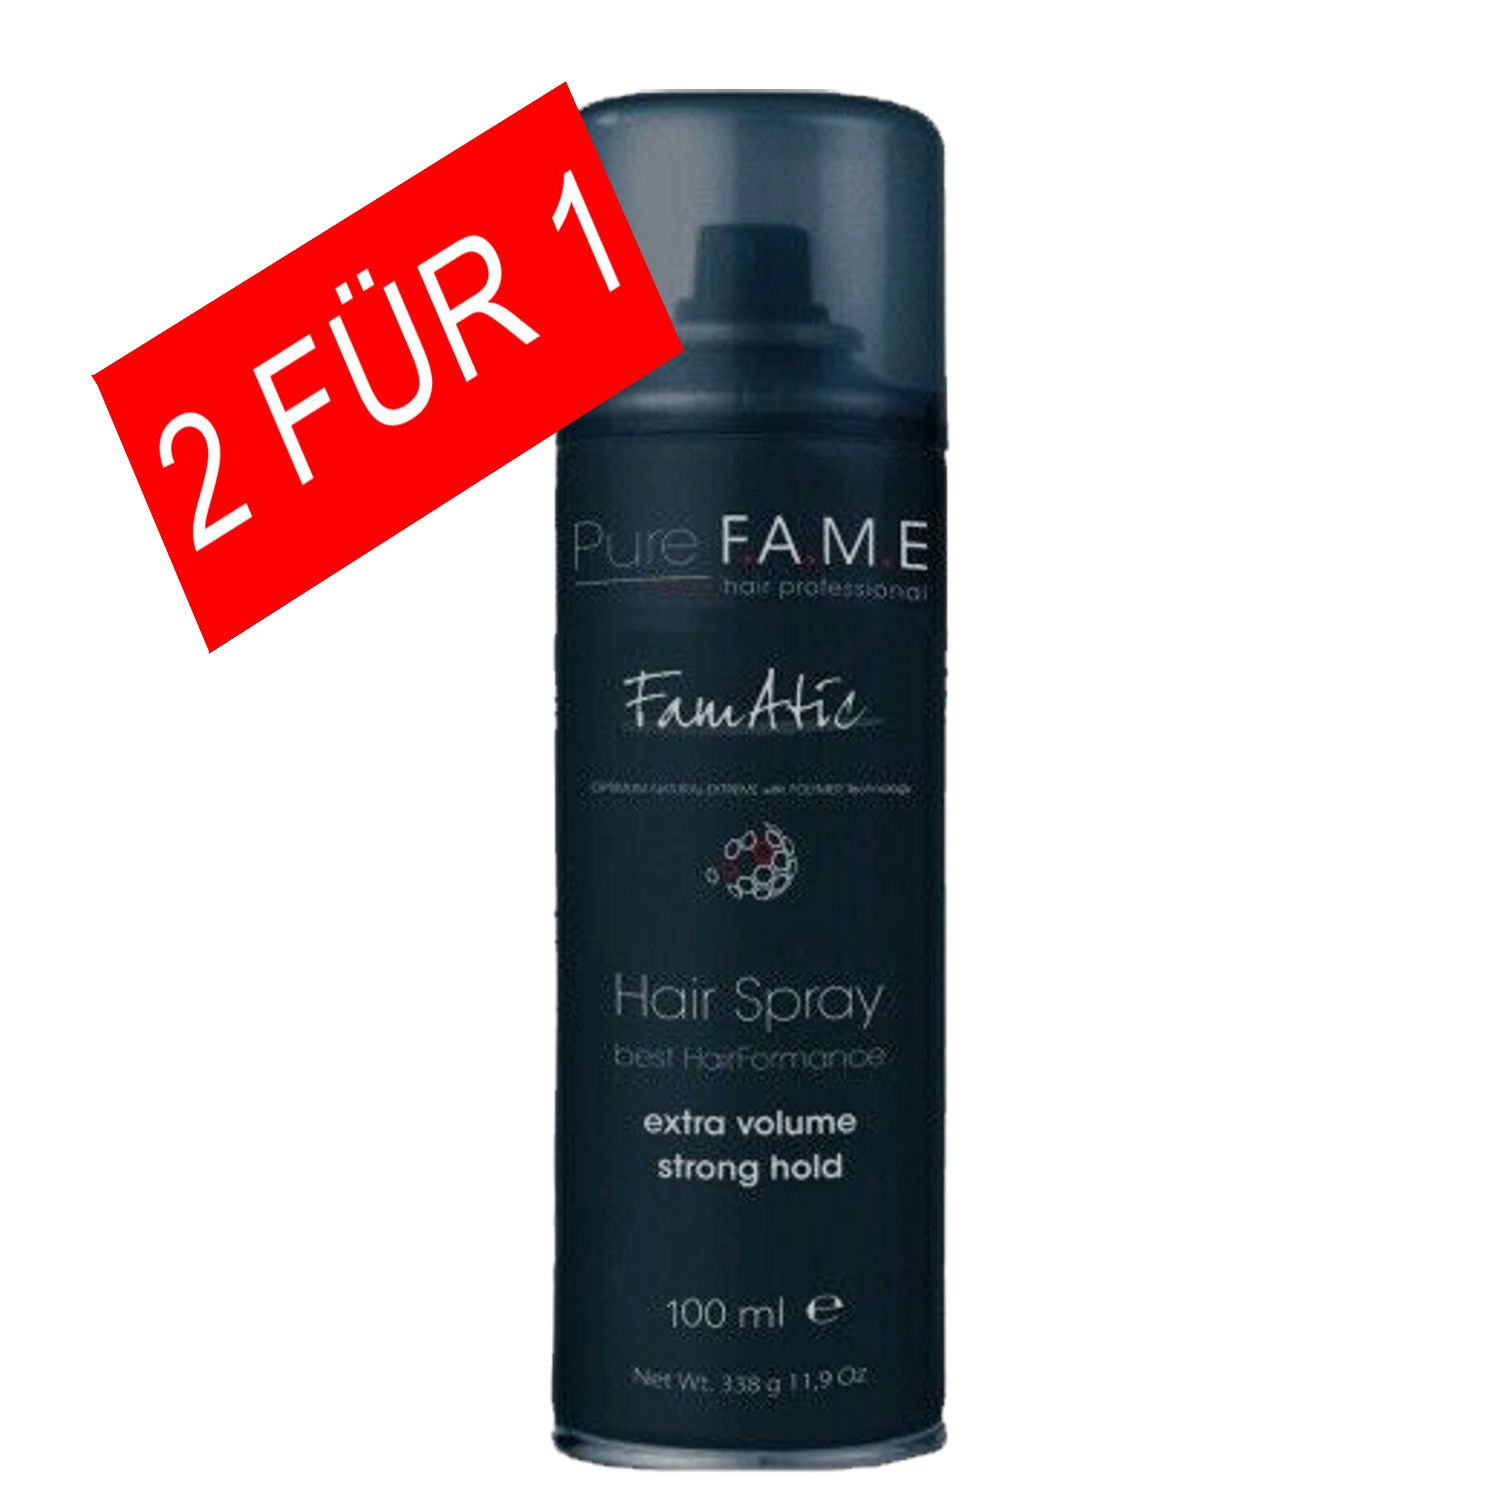 Pure Fame FAMATIC Haarspray 100 ml - AKTION 2 FÜR 1